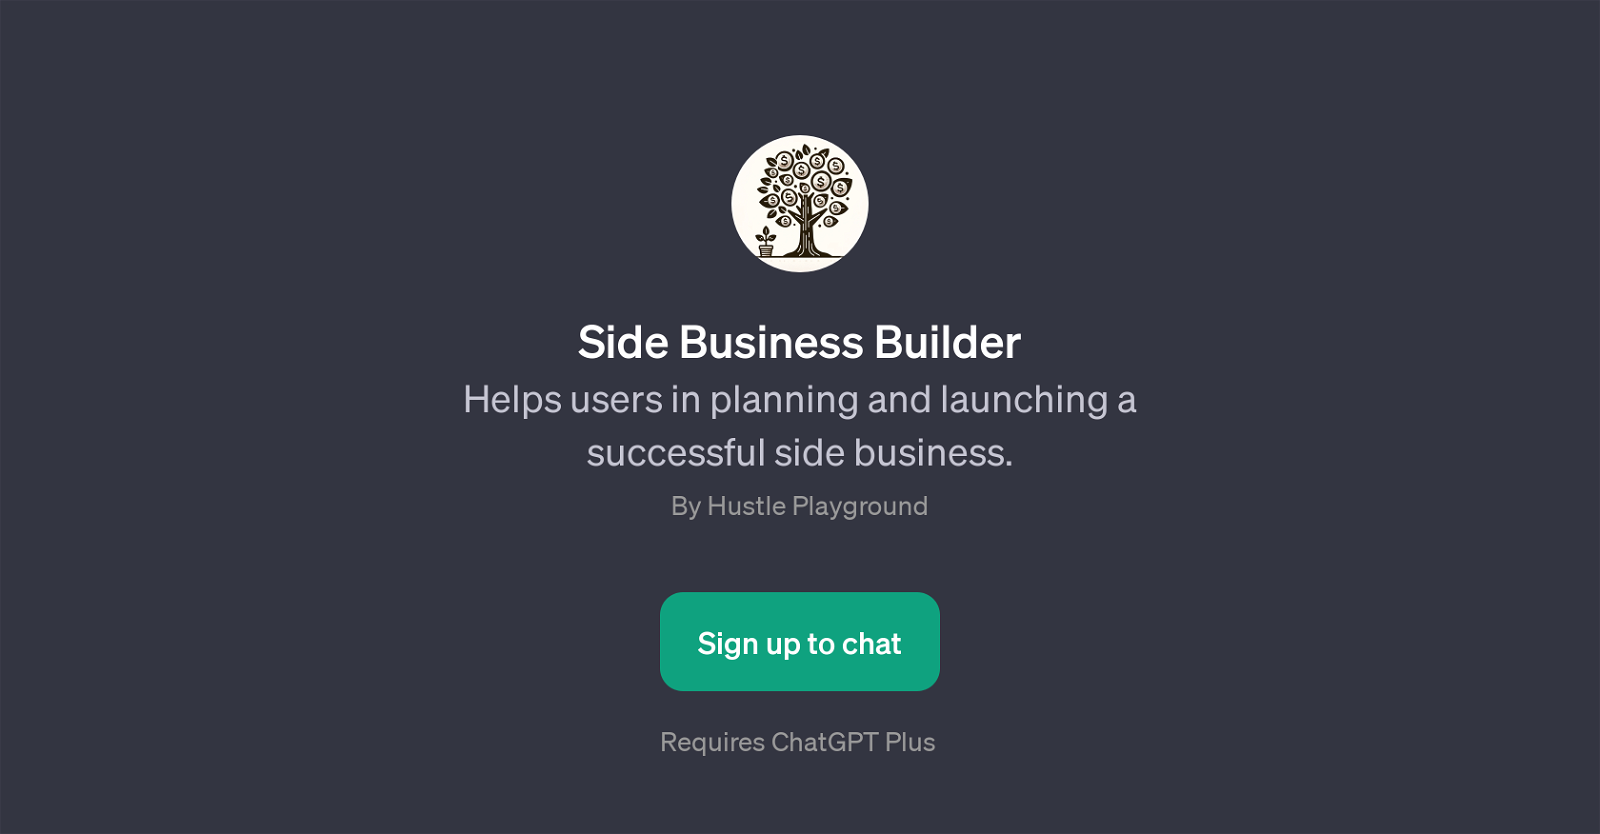 Side Business Builder website